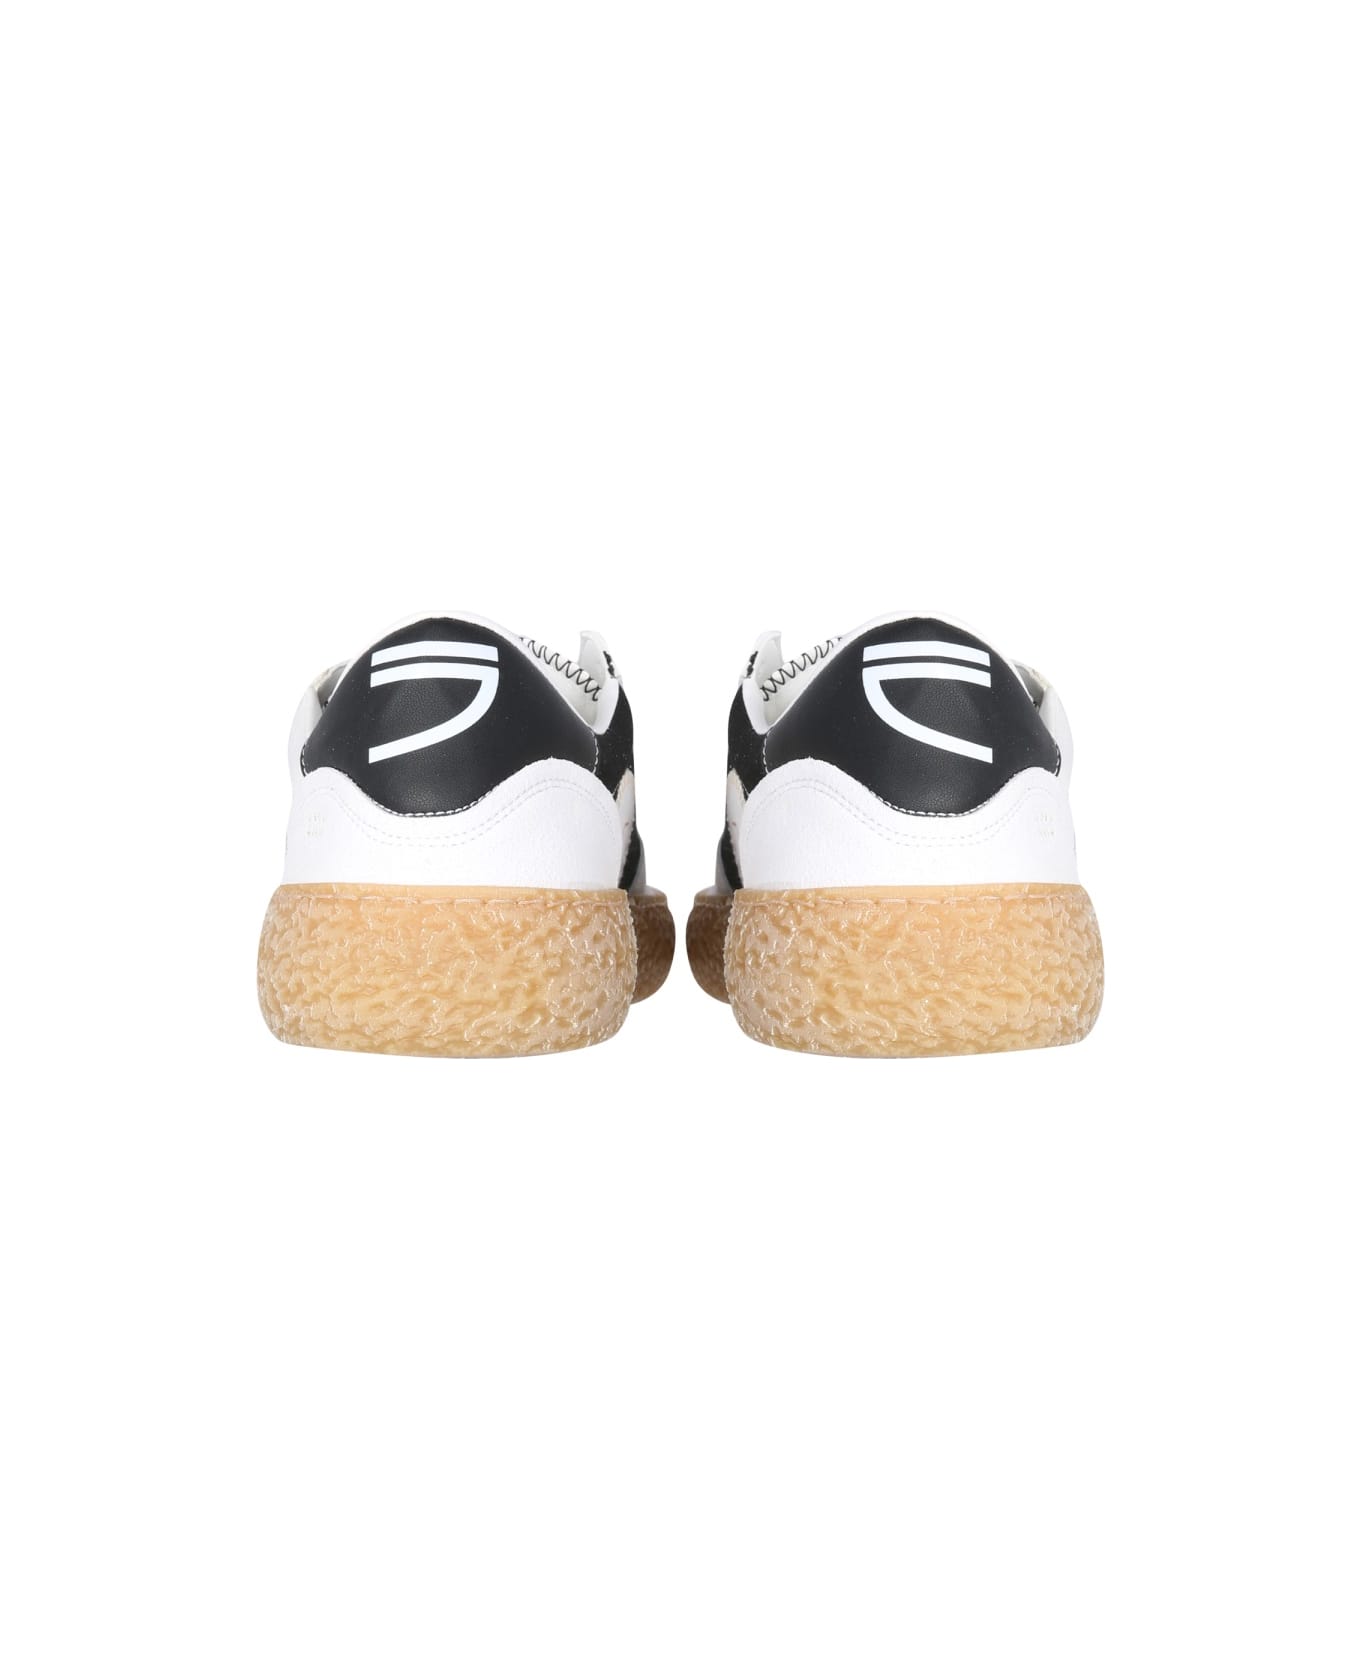 Puraai Vegan Sneakers - WHITE スニーカー